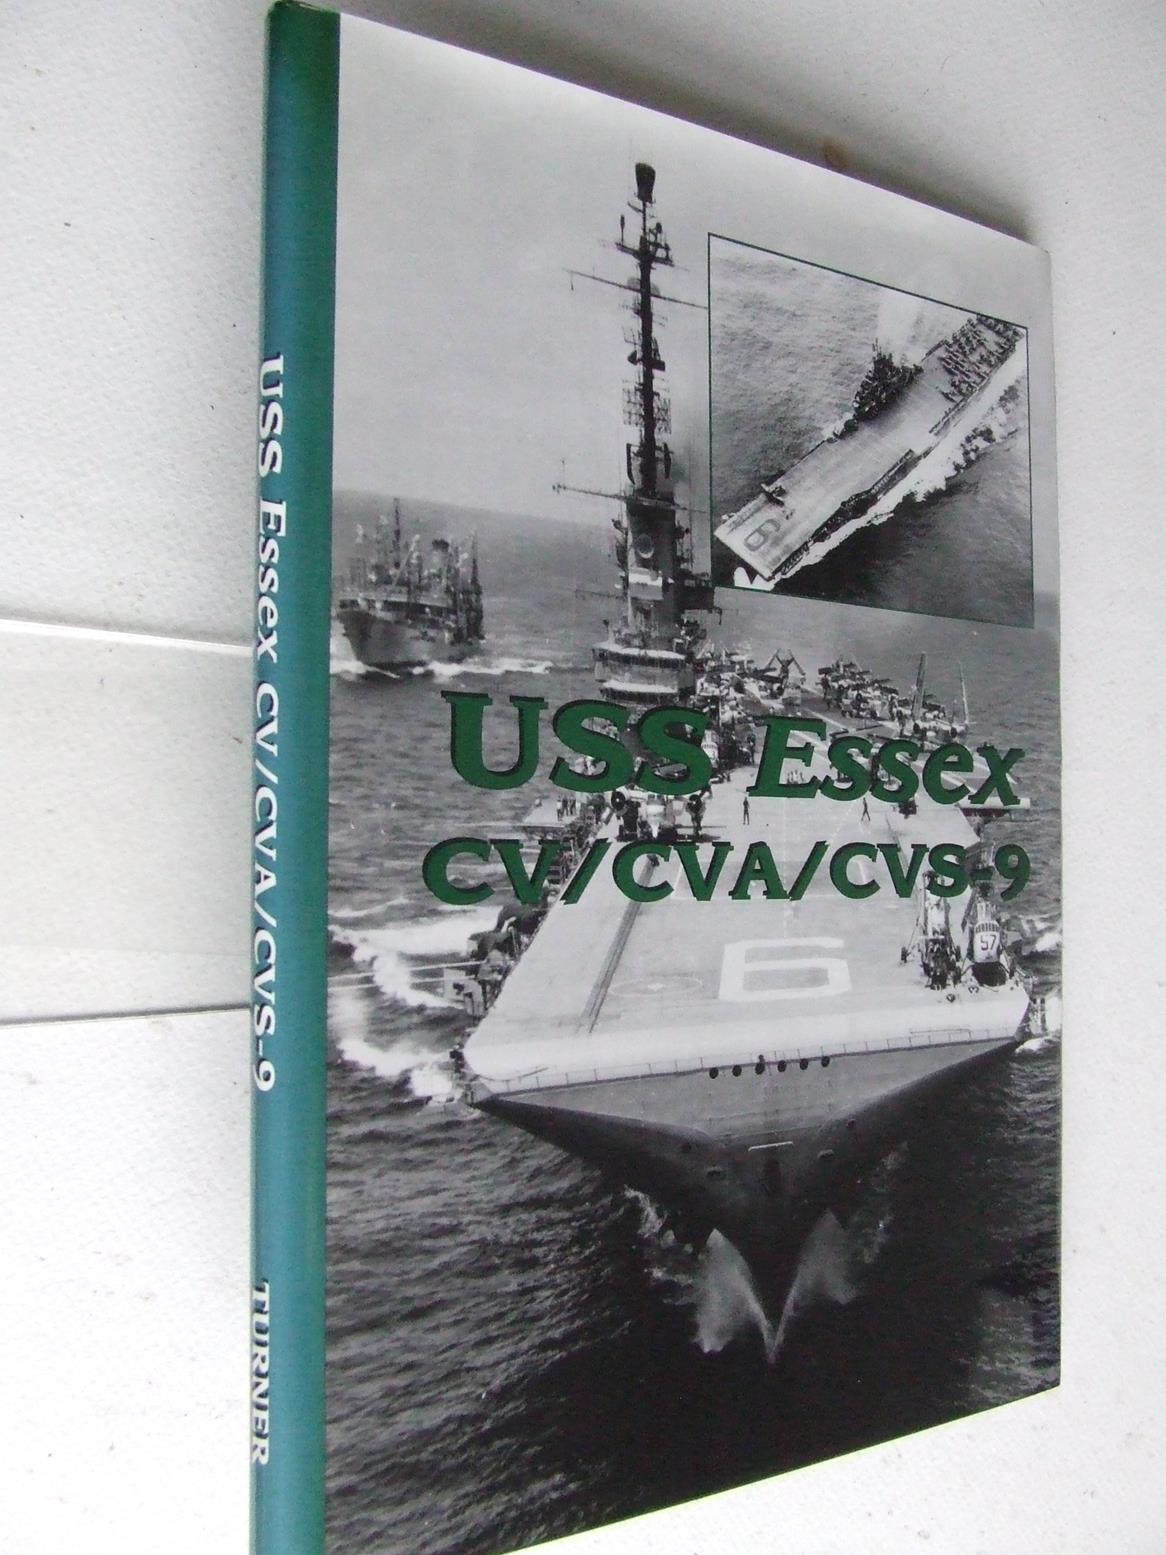 USS Essex cv/cva/cvs-9